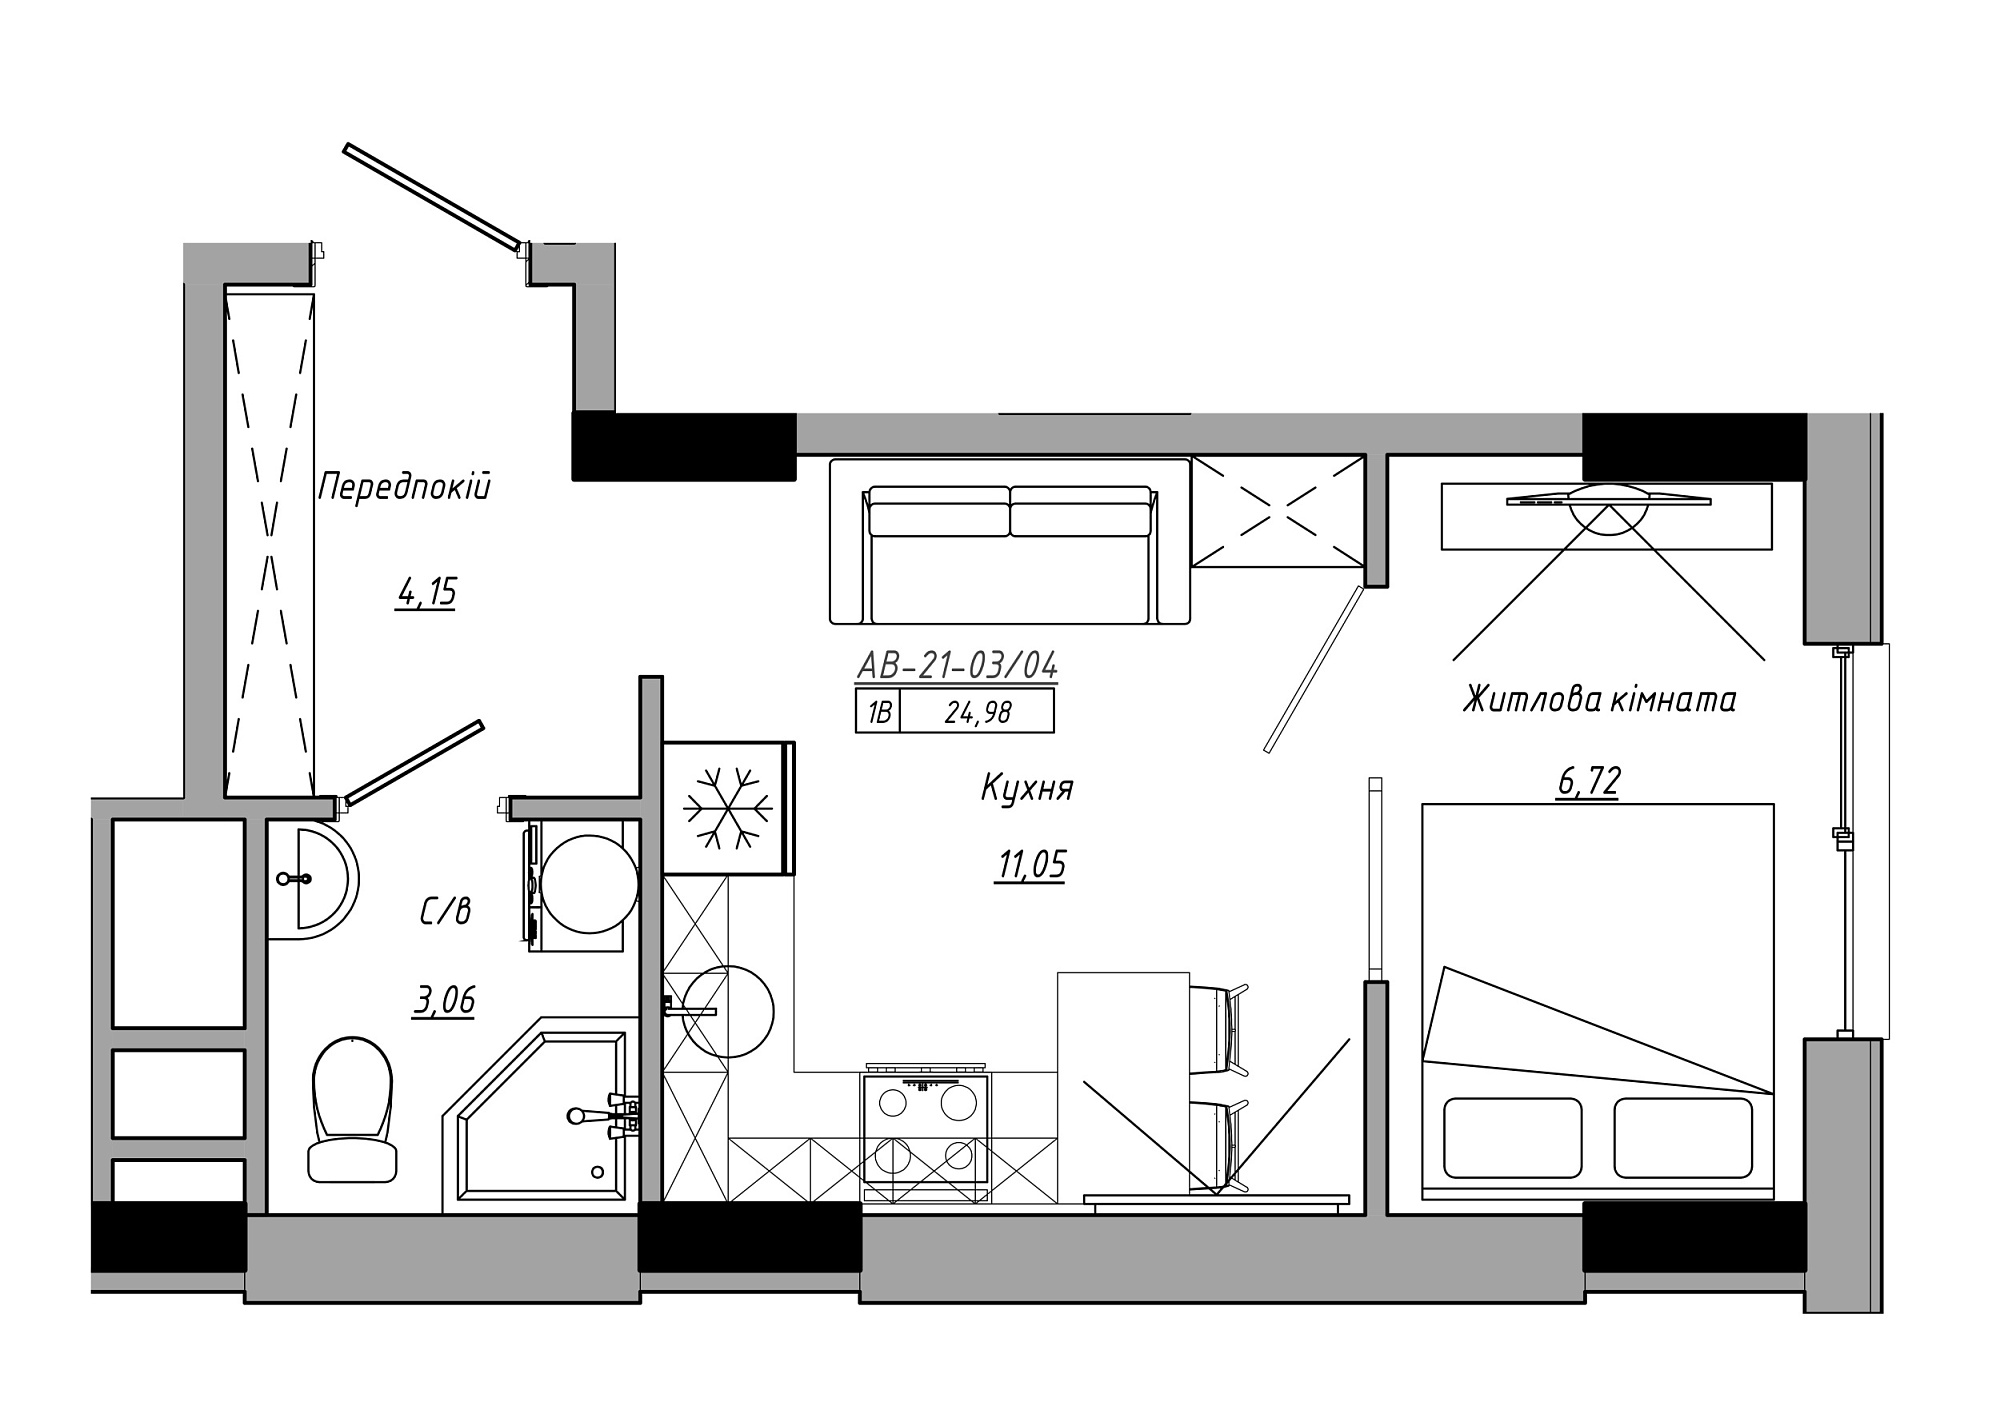 Планування 1-к квартира площею 24.98м2, AB-21-03/00004.